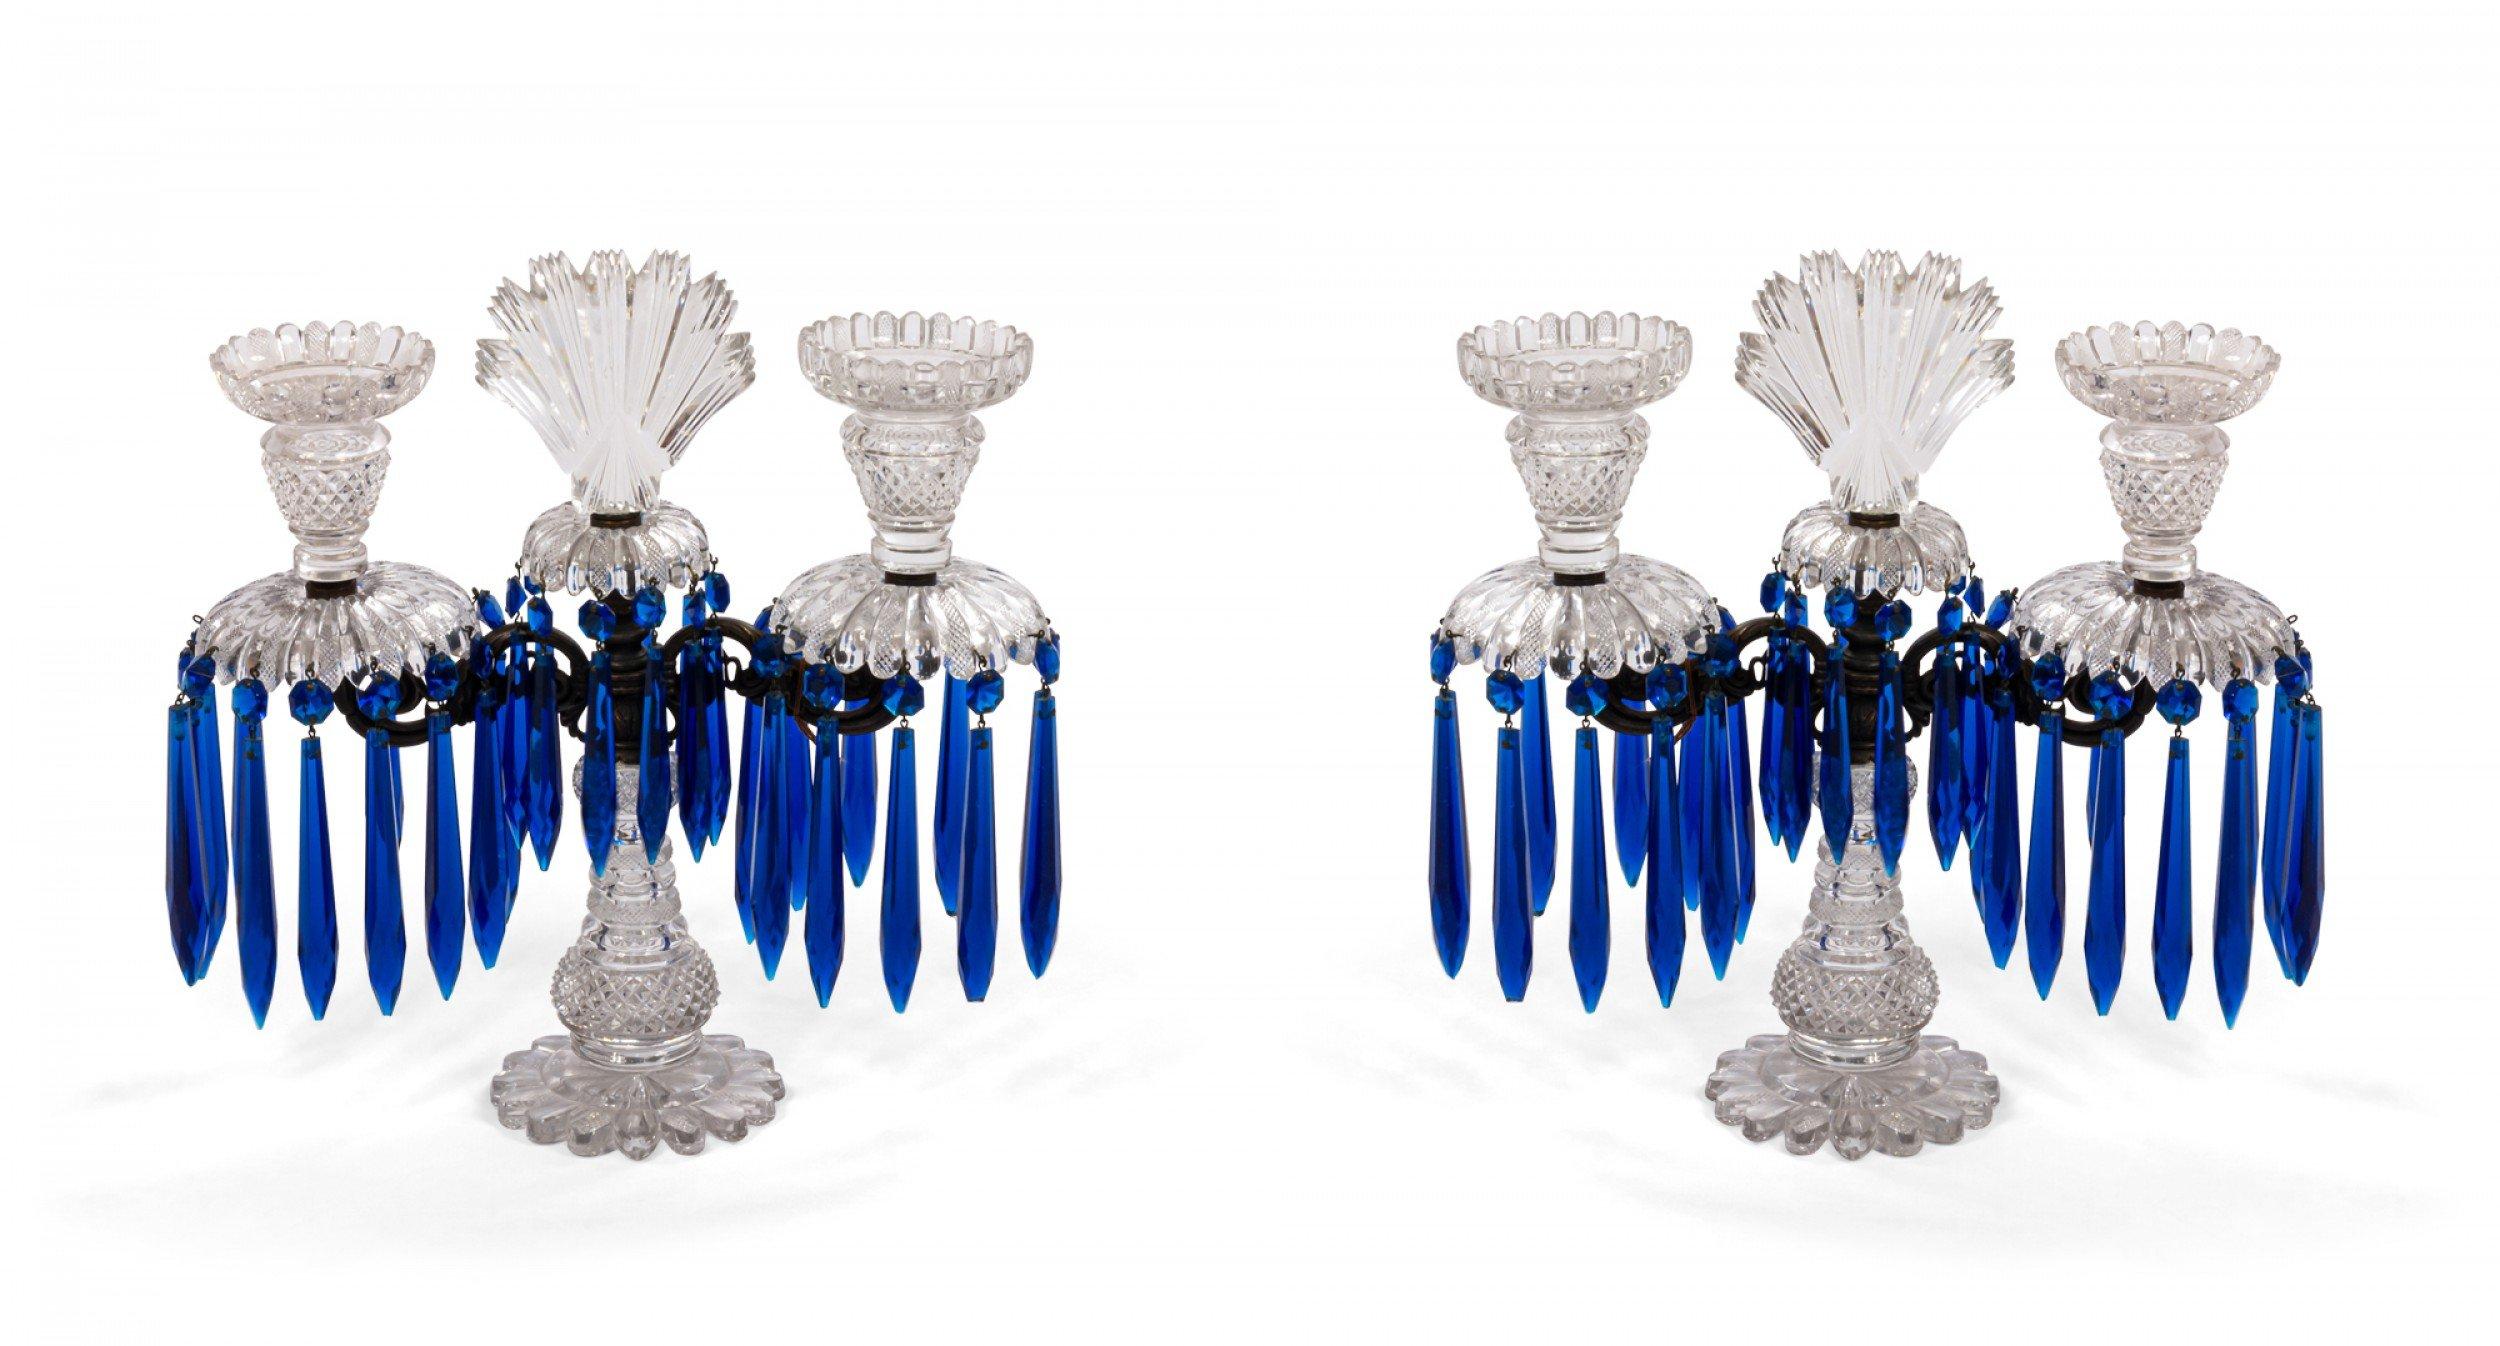 Ein Paar englische viktorianische Kandelaber aus geschliffenem Kristall mit blauen Prismen und 2 Armen, die von einer eisernen Schnecke unter einer fächerförmigen Spitze mit einem gezackten Sockel getragen werden. (PREIS ALS PAAR).
 